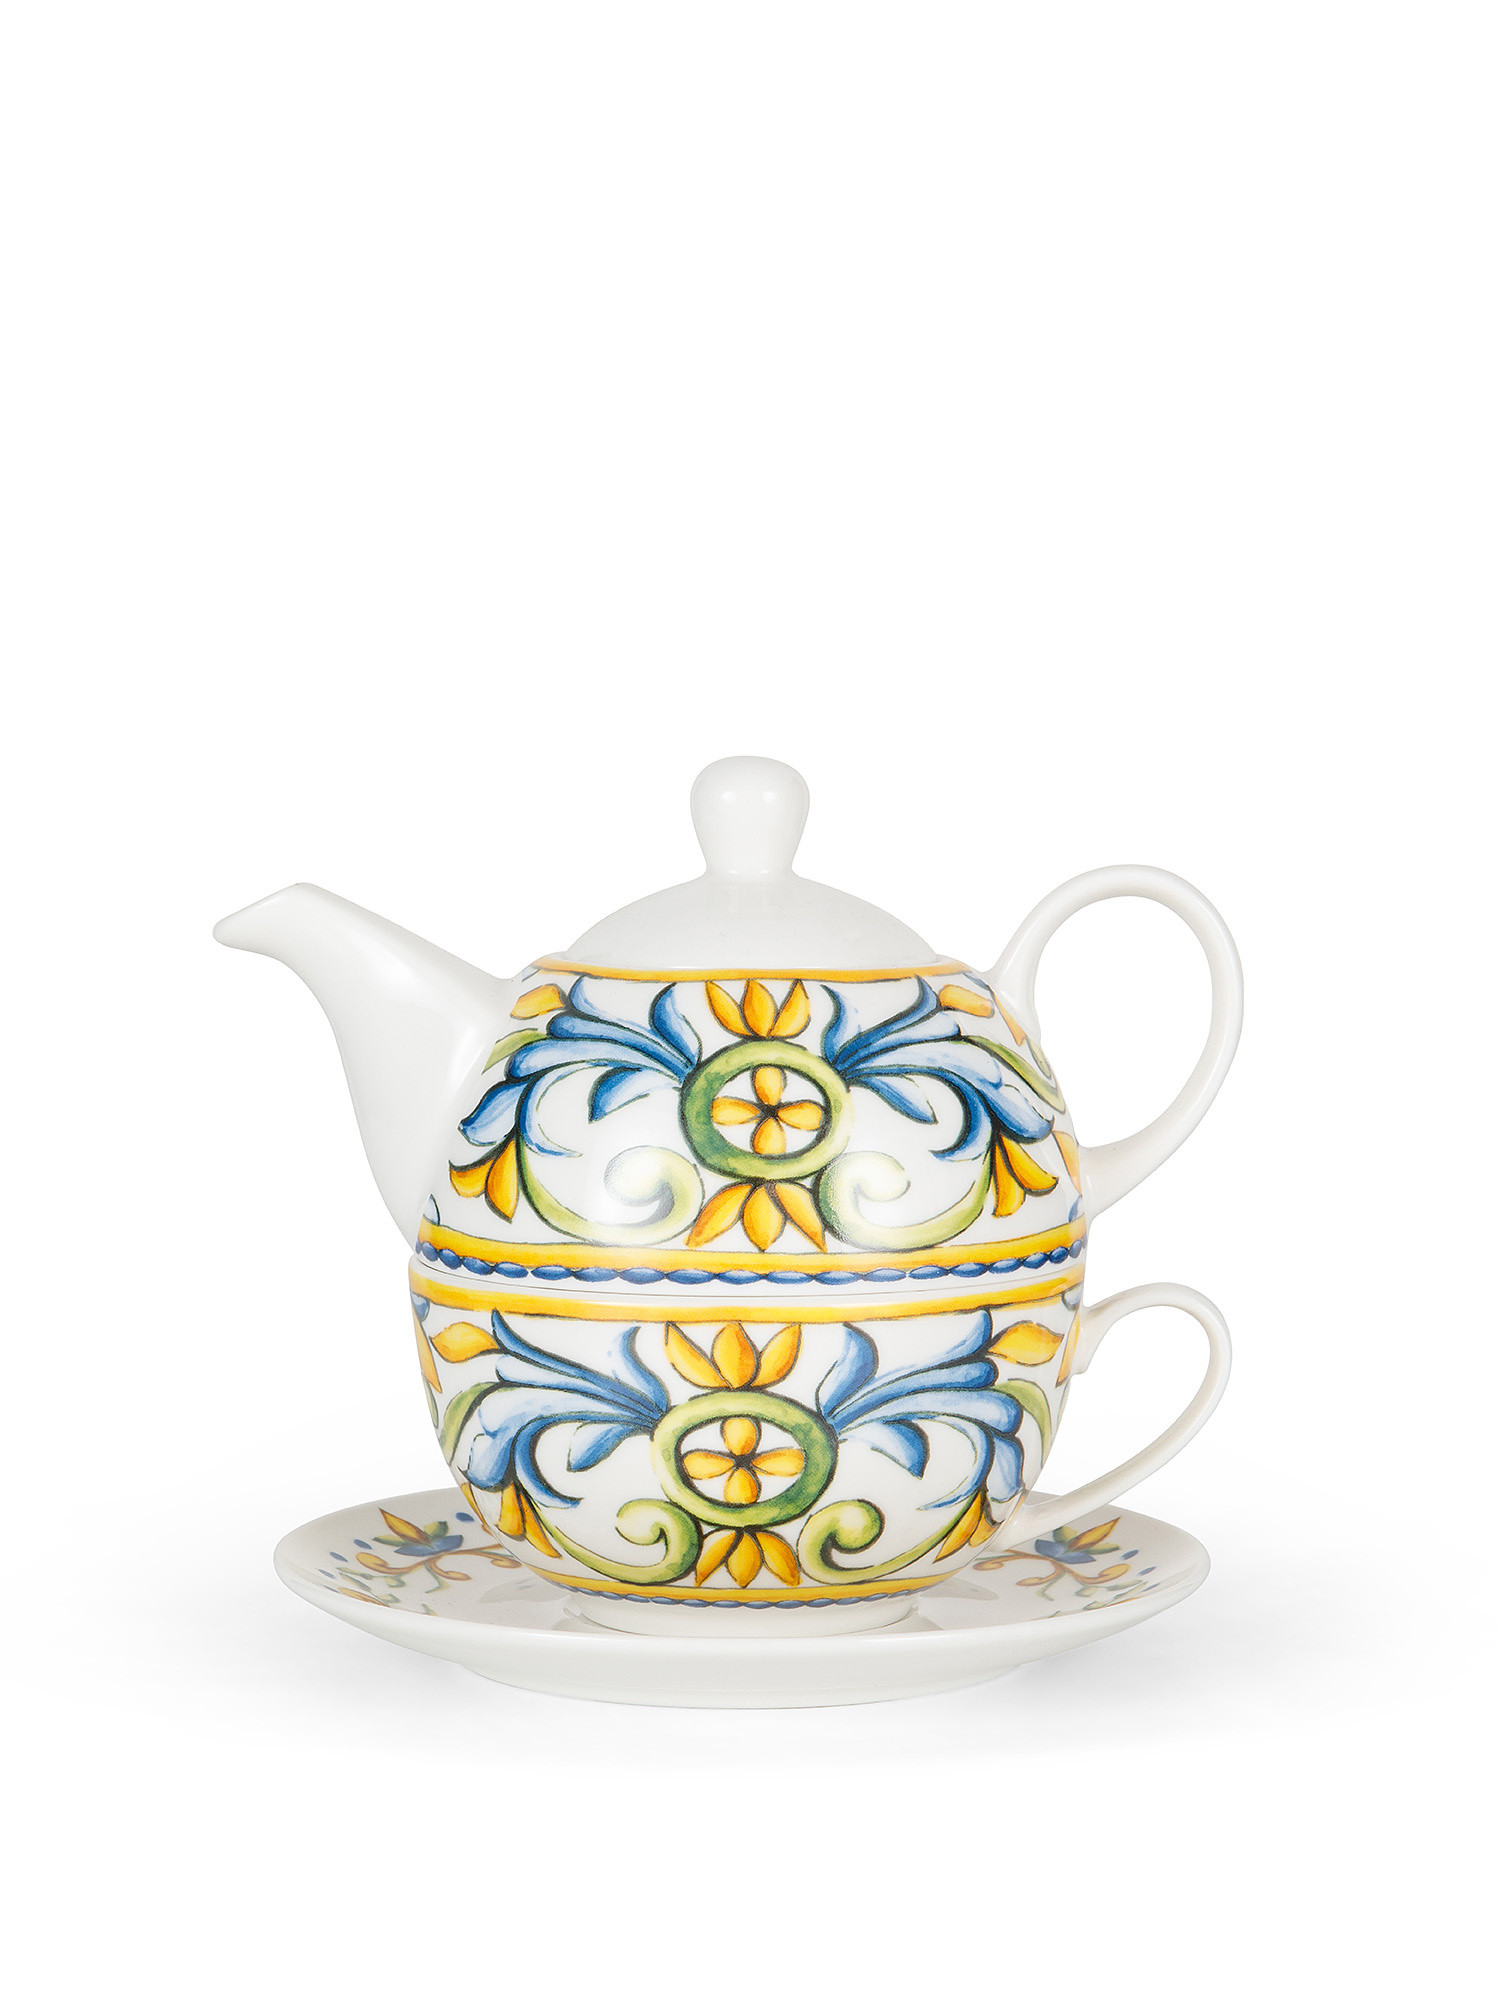 Teaforone new bone china with lemons motif, White, large image number 0